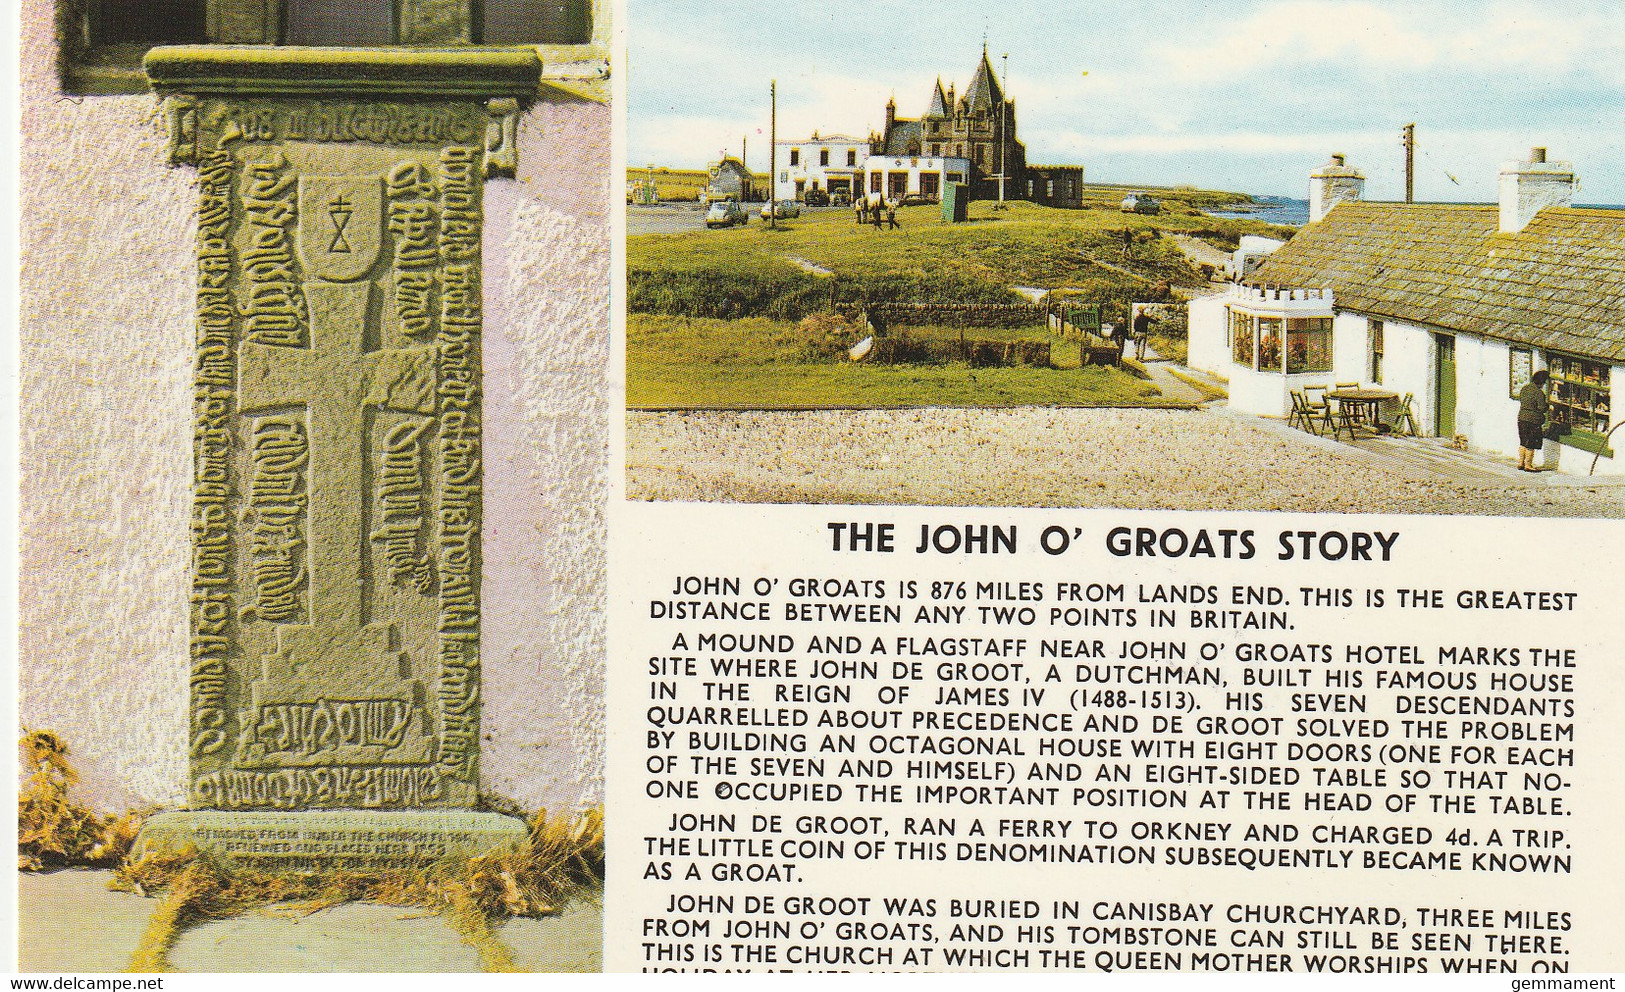 THE JOHN O GROATS STORY - Caithness